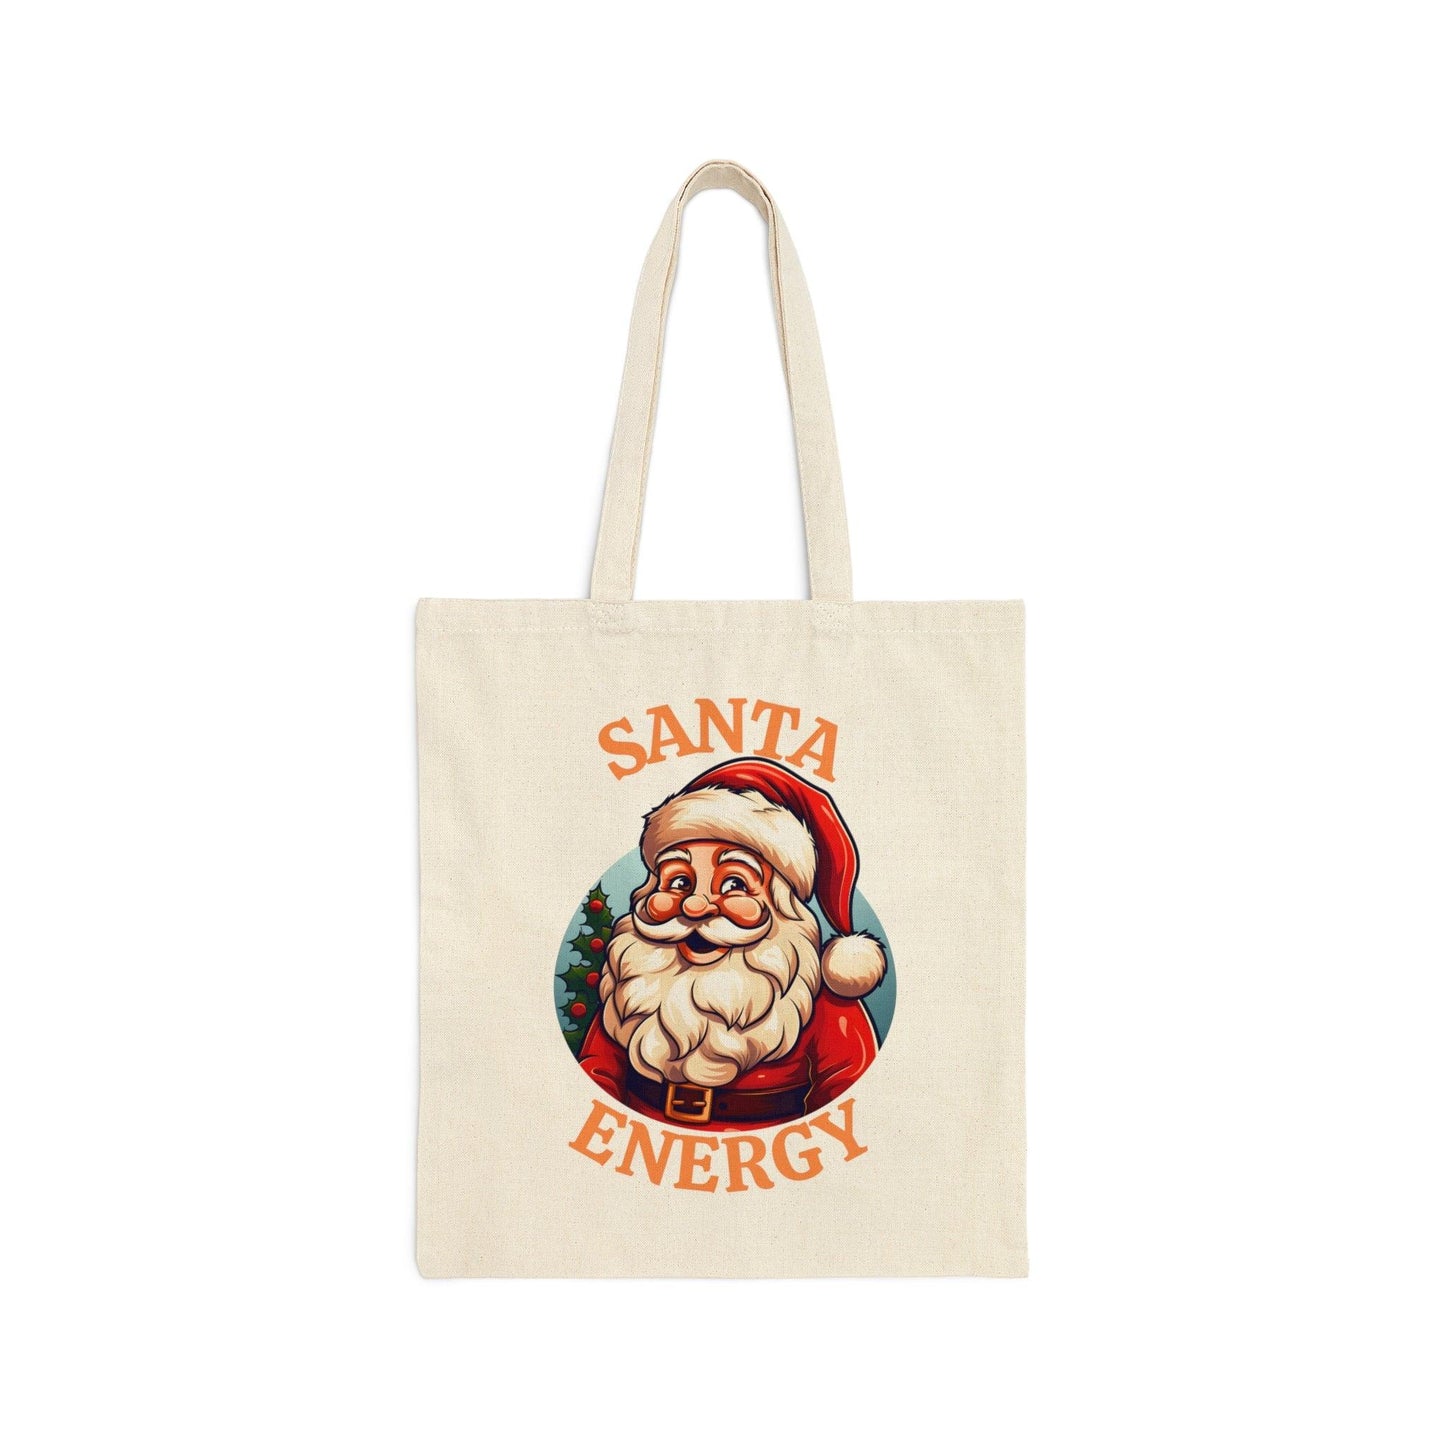 Santa Energy Tote Bag Christmas Bag Christmas Tote Bag Santa Claus Totes Bag Canvas Tote Bag Shopping Bag Gift For Women Totes Birthday Gift Bag - Giftsmojo